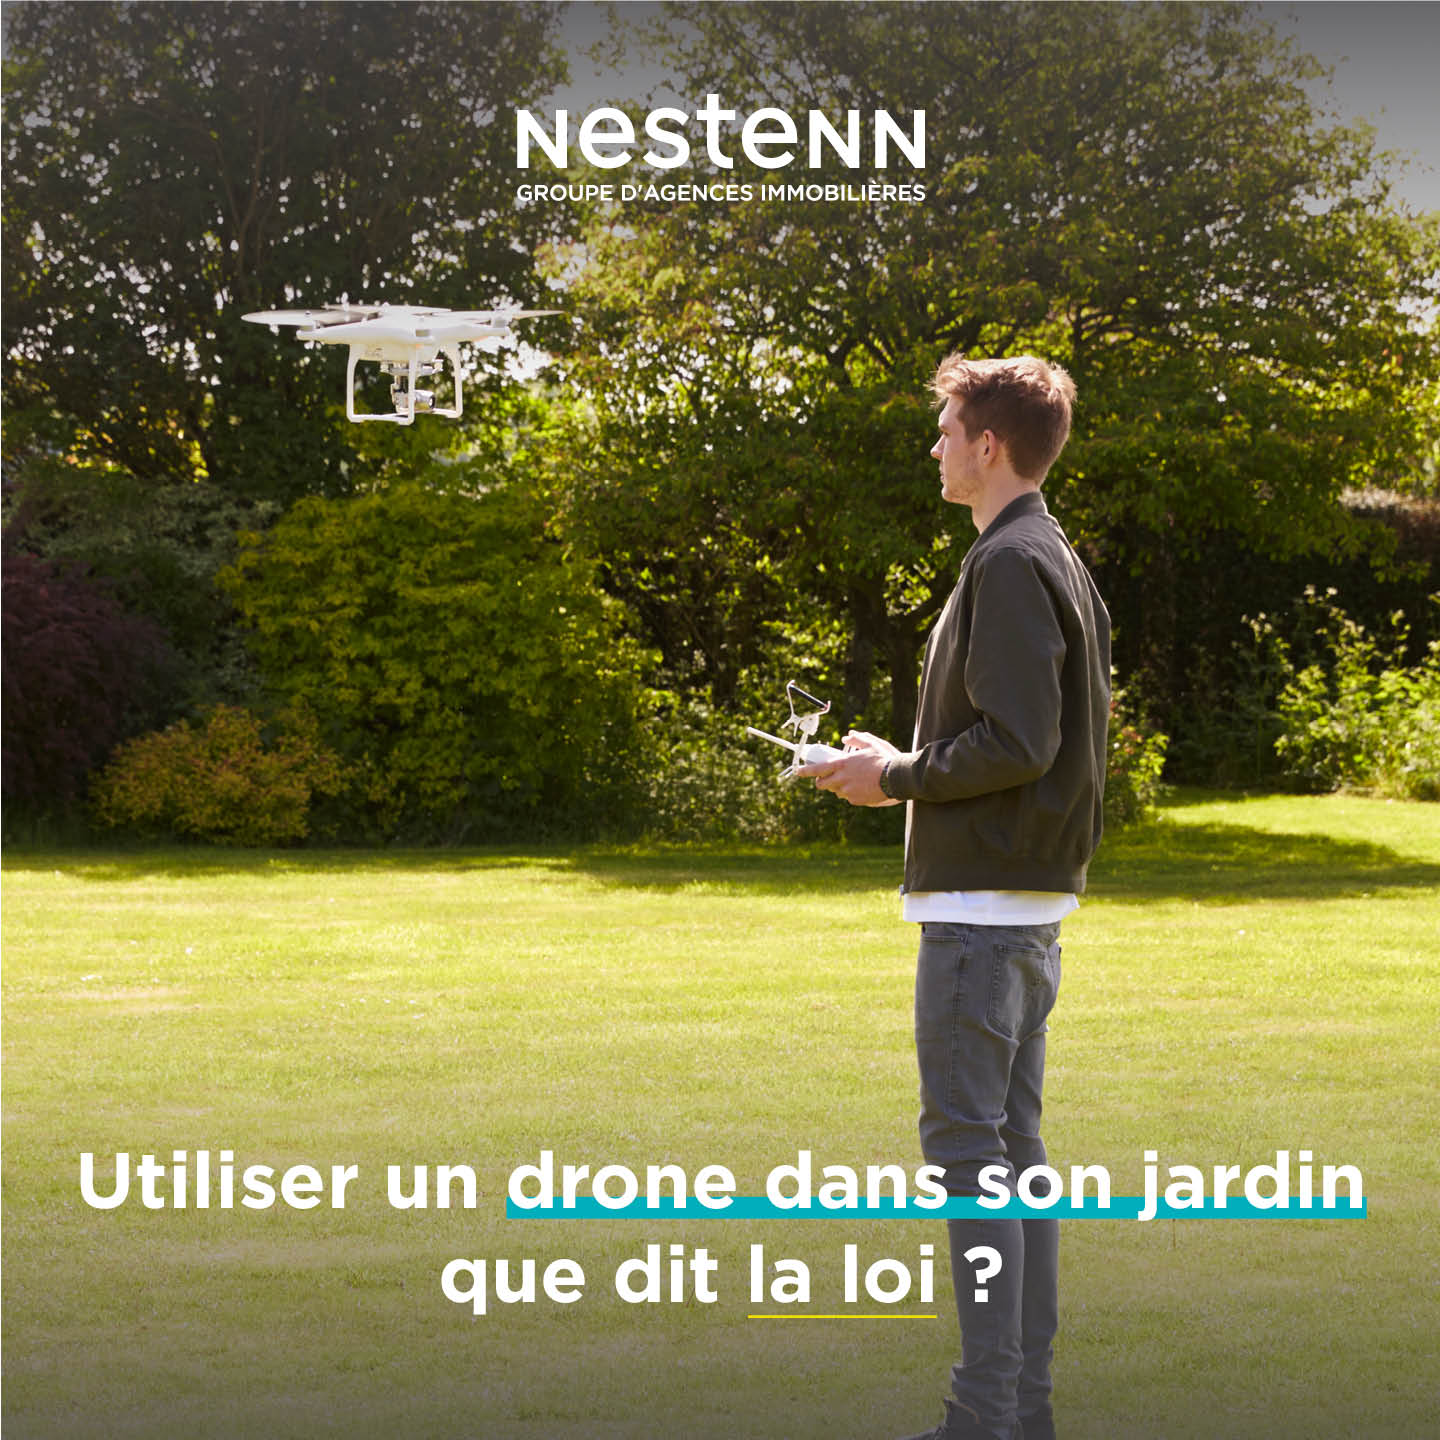 Utiliser un drone dans son jardin, que dit la loi ?